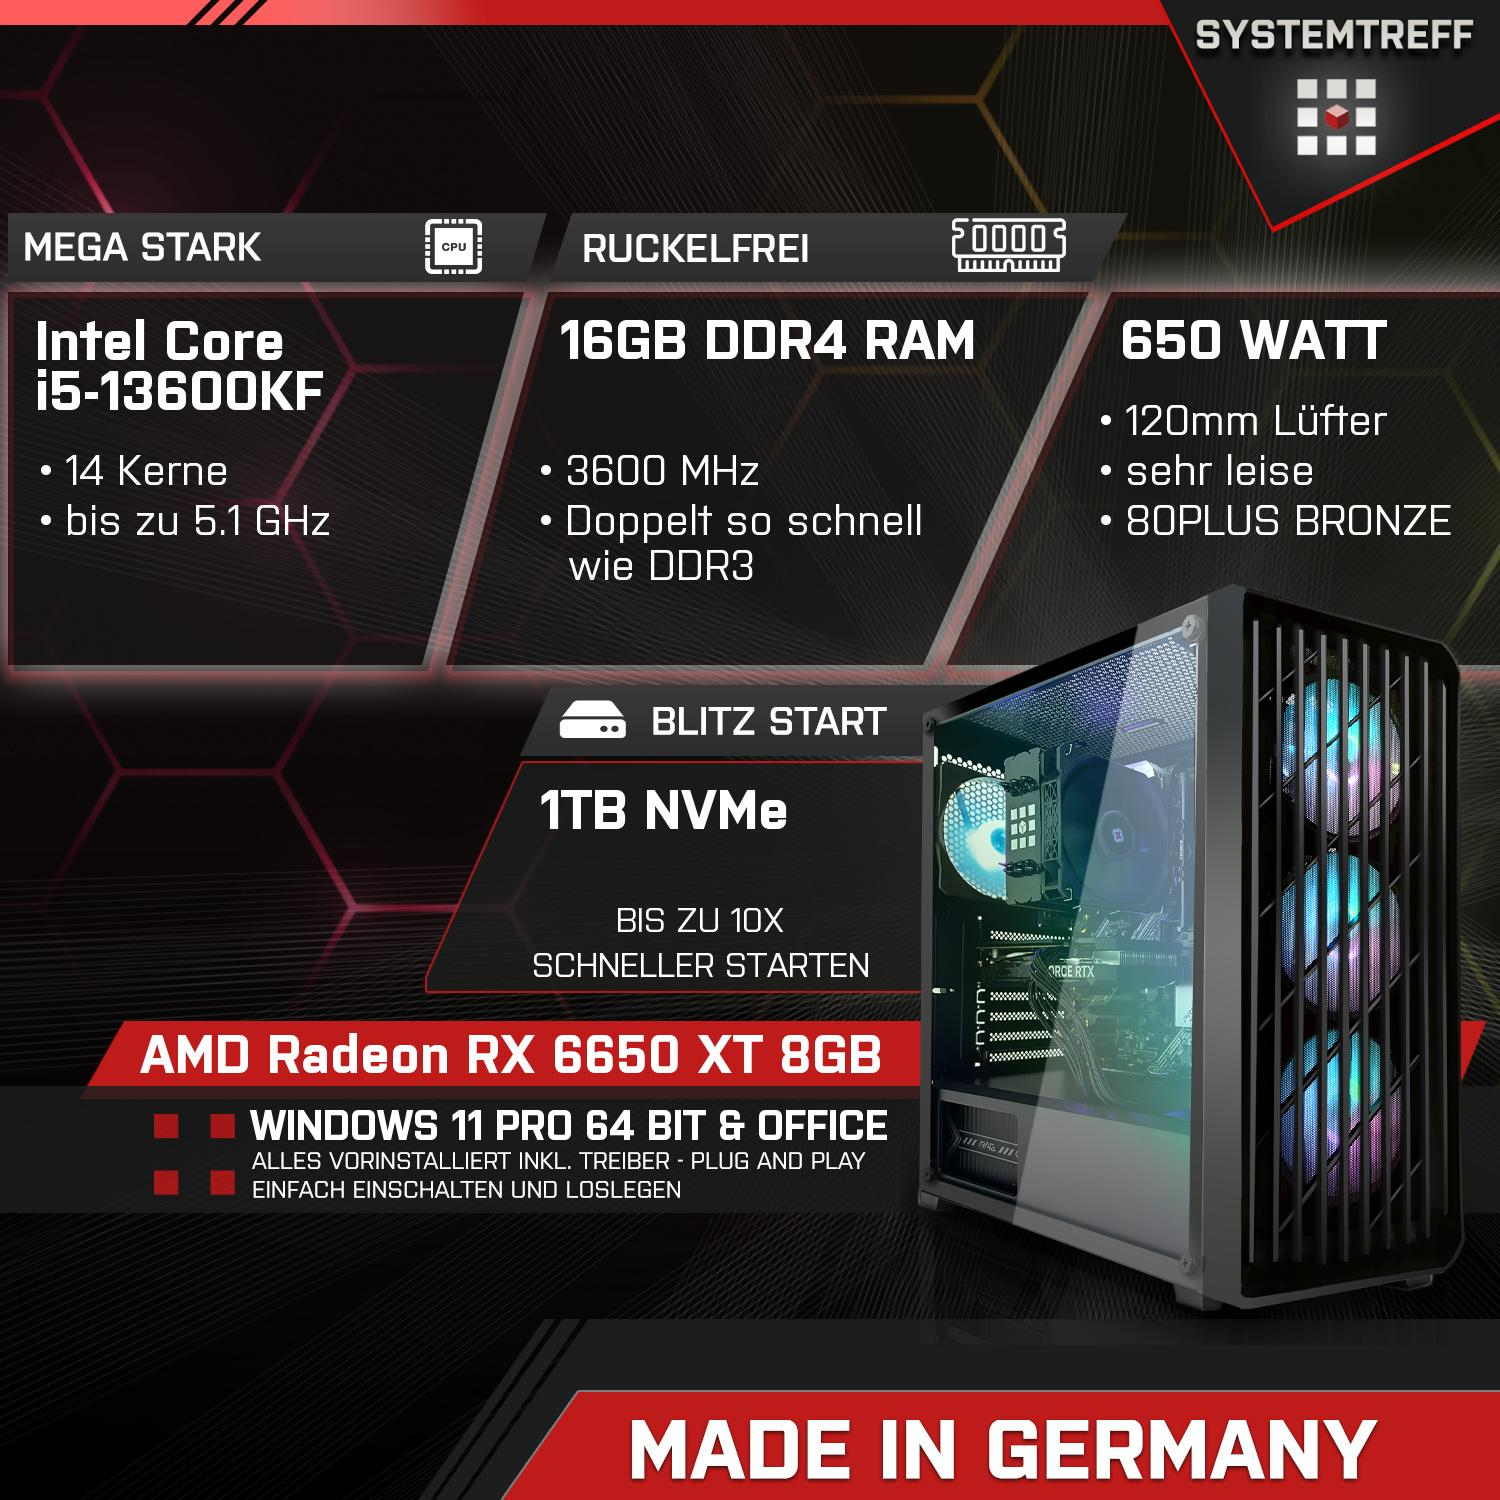 GDDR6, Komplett Gaming GB RAM, mit AMD Radeon mSSD, Komplett GB i5-13600KF PC GB Core 16 Intel 8 Prozessor, RX 6650 8GB SYSTEMTREFF 1000 XT i5-13600KF,